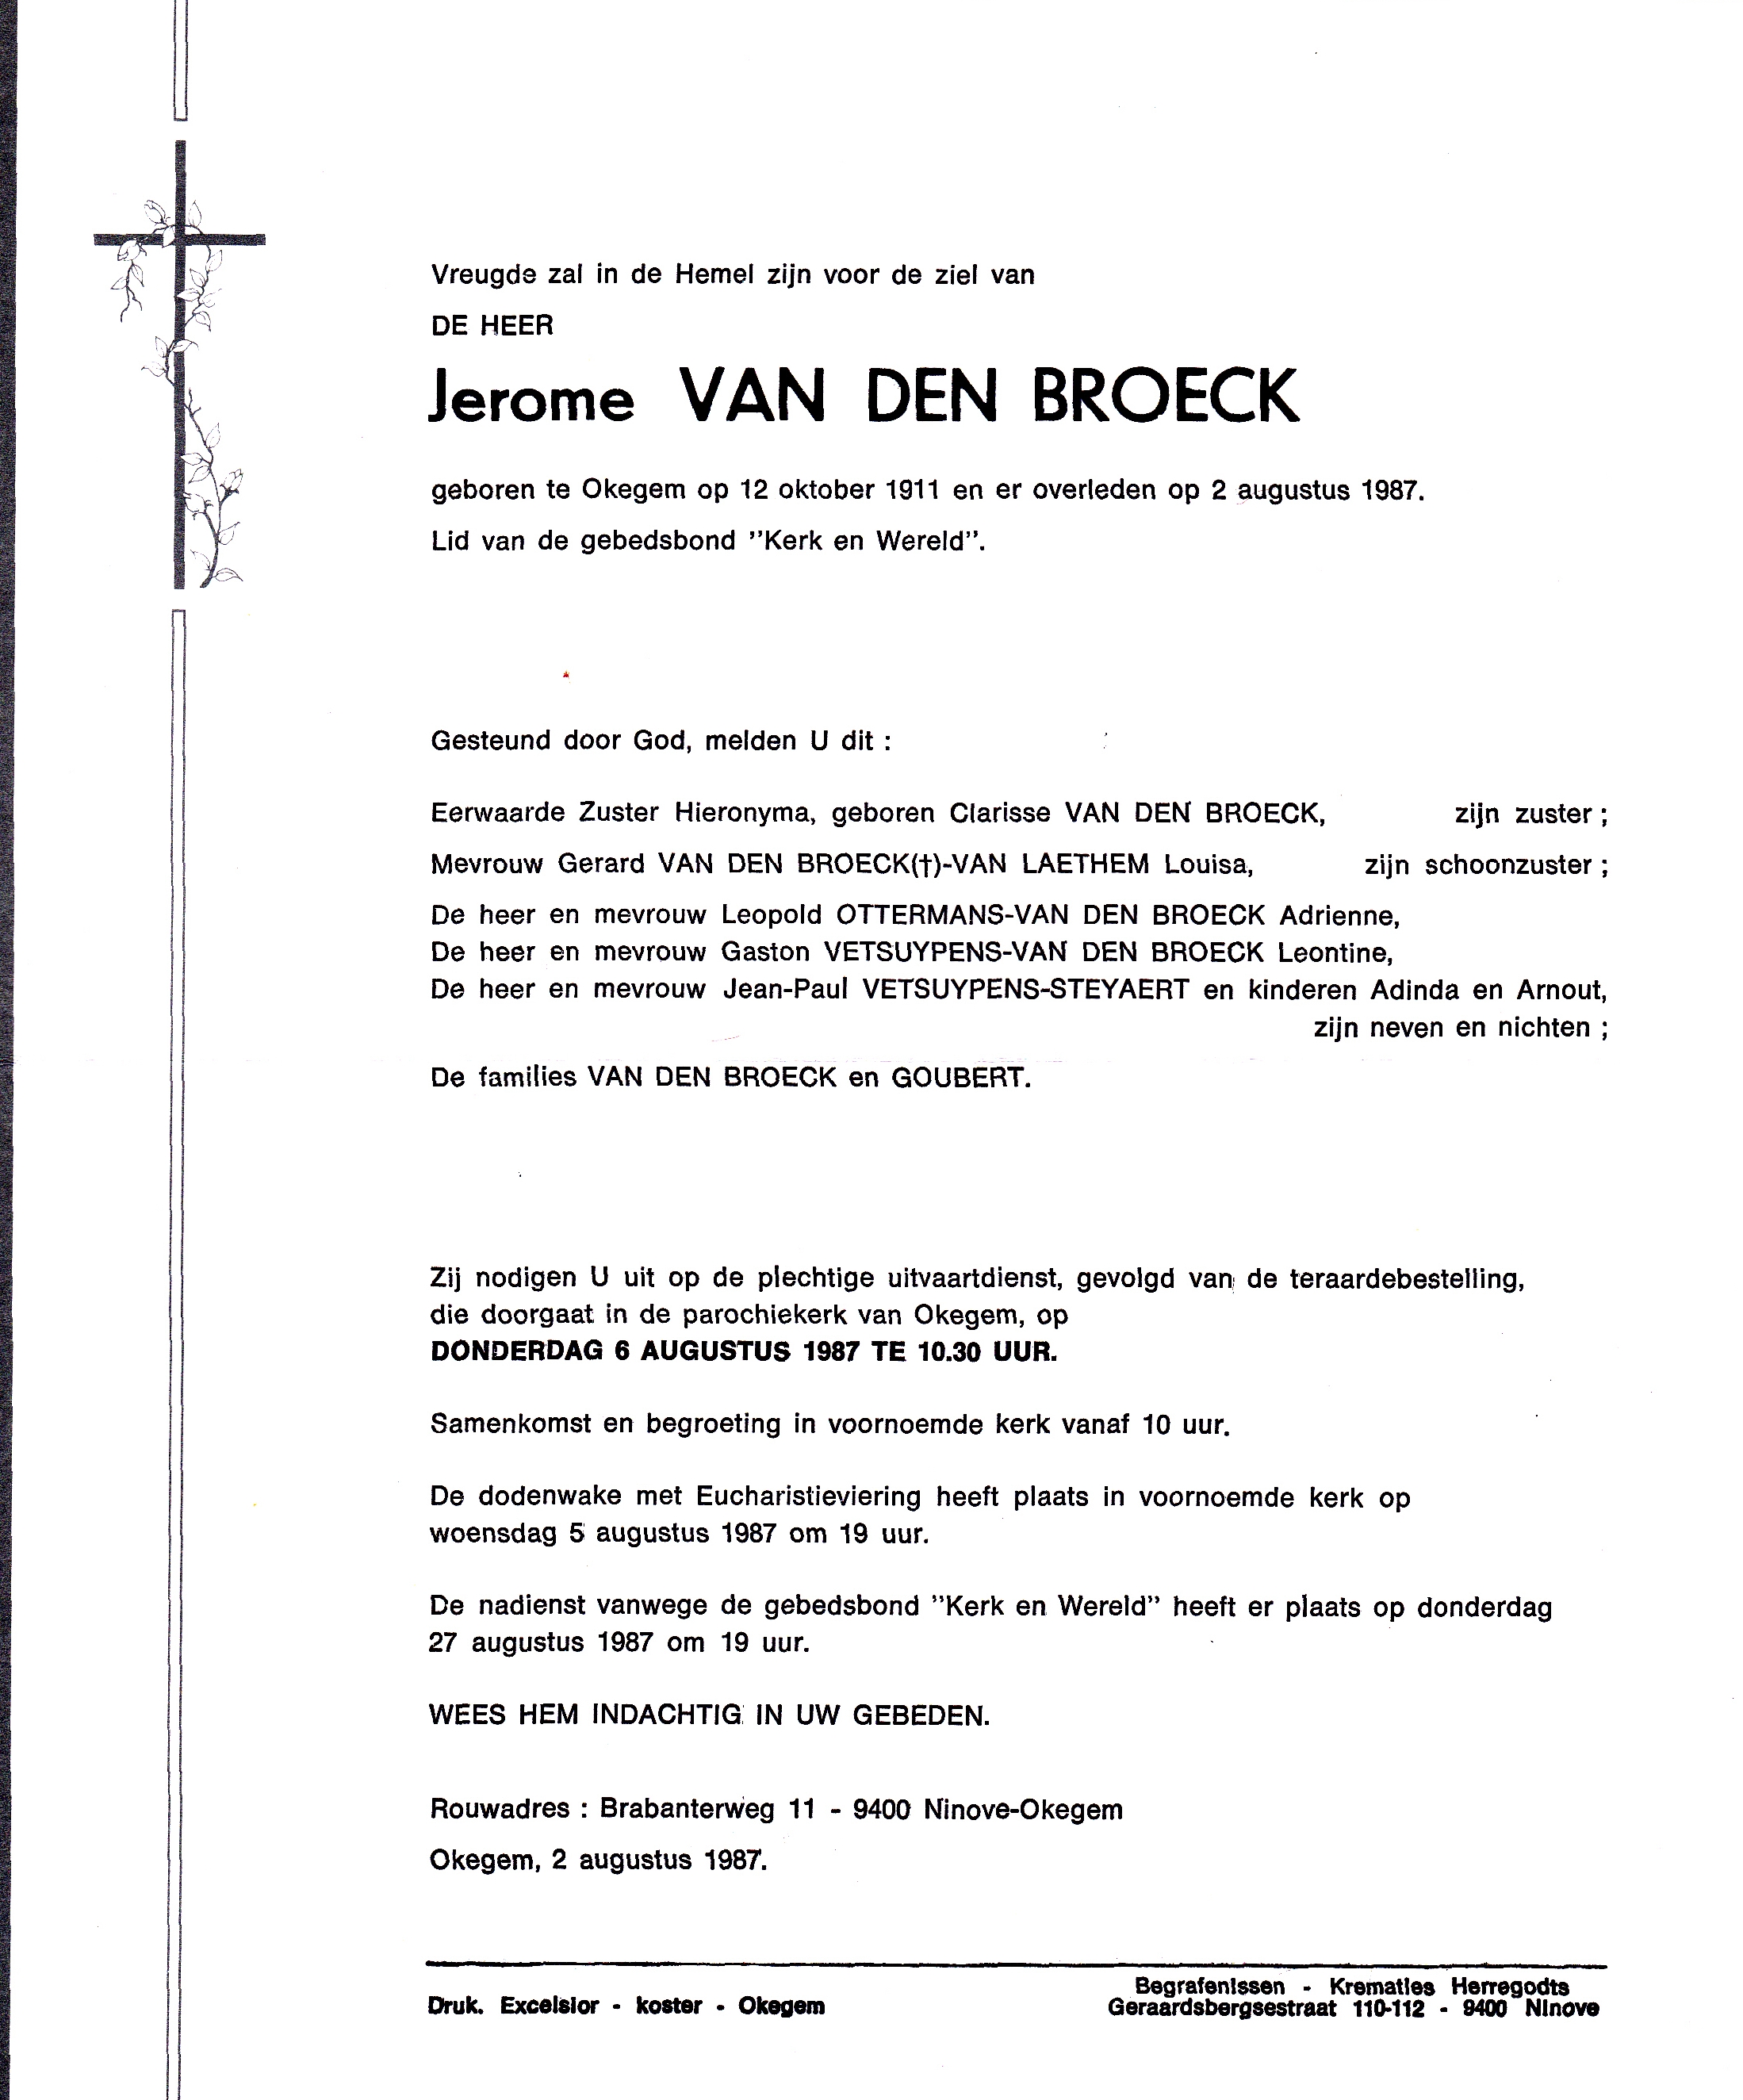 Van den Broeck Jerome  